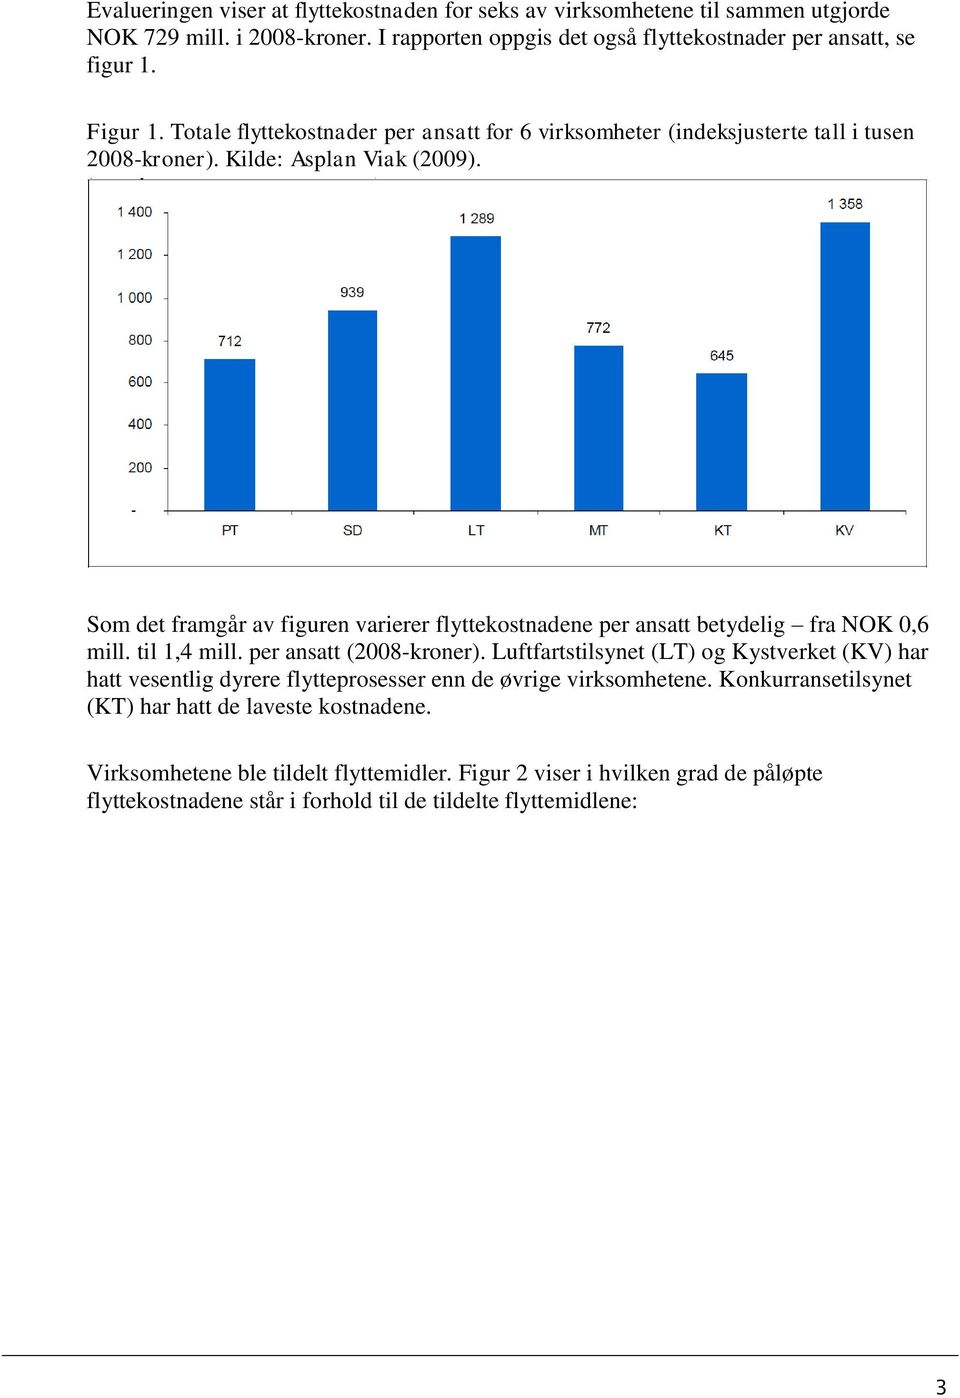 Som det framgår av figuren varierer flyttekostnadene per ansatt betydelig fra NOK 0,6 mill. til 1,4 mill. per ansatt (2008-kroner).